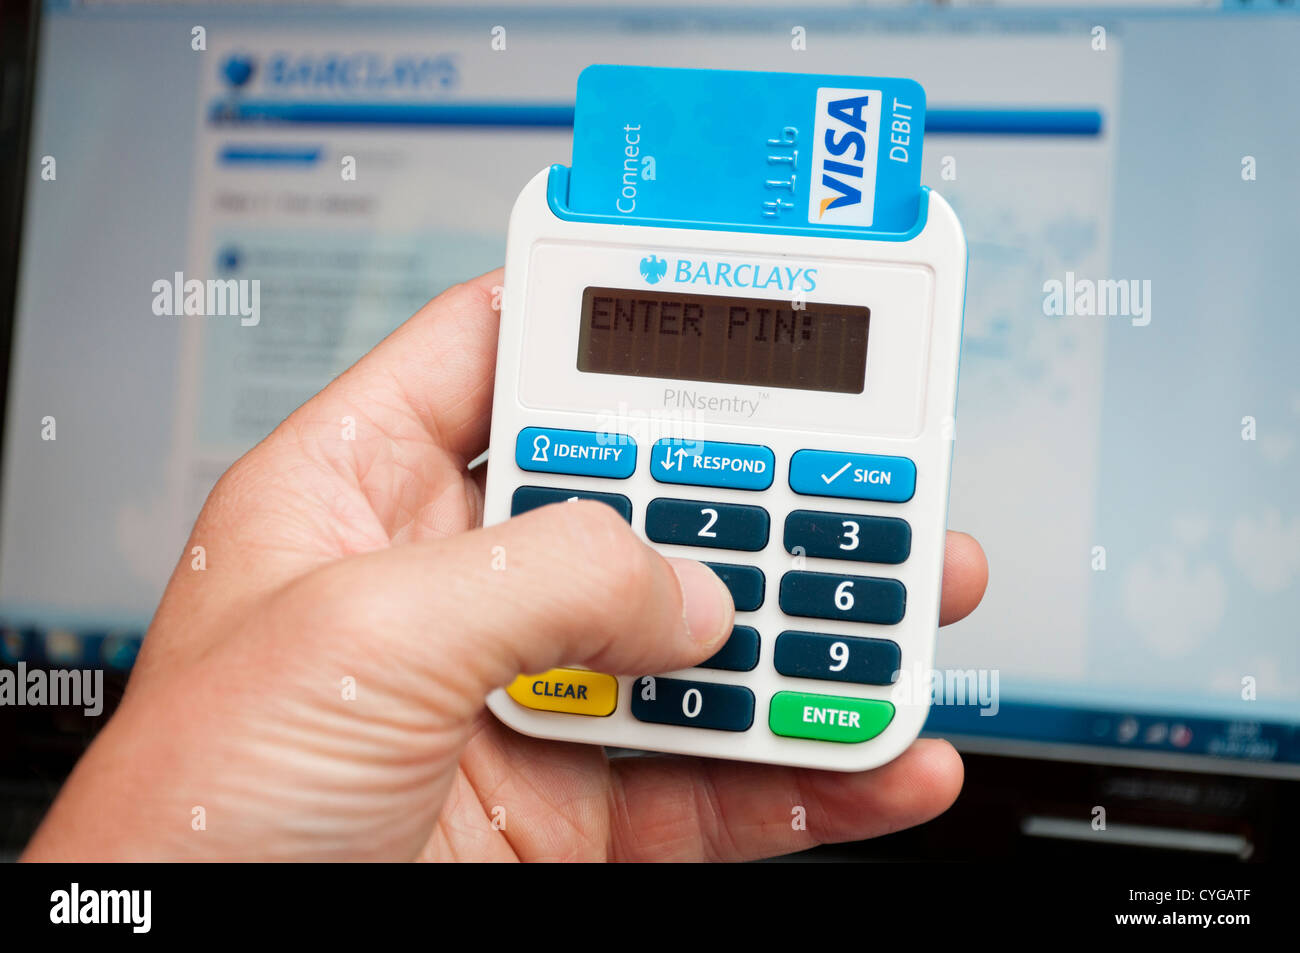 Online-banking PINsentry Sicherheit Chip und Pin-Kartenleser für  Genehmigung Transaktionen über Barclays Bank Konto Stockfotografie - Alamy